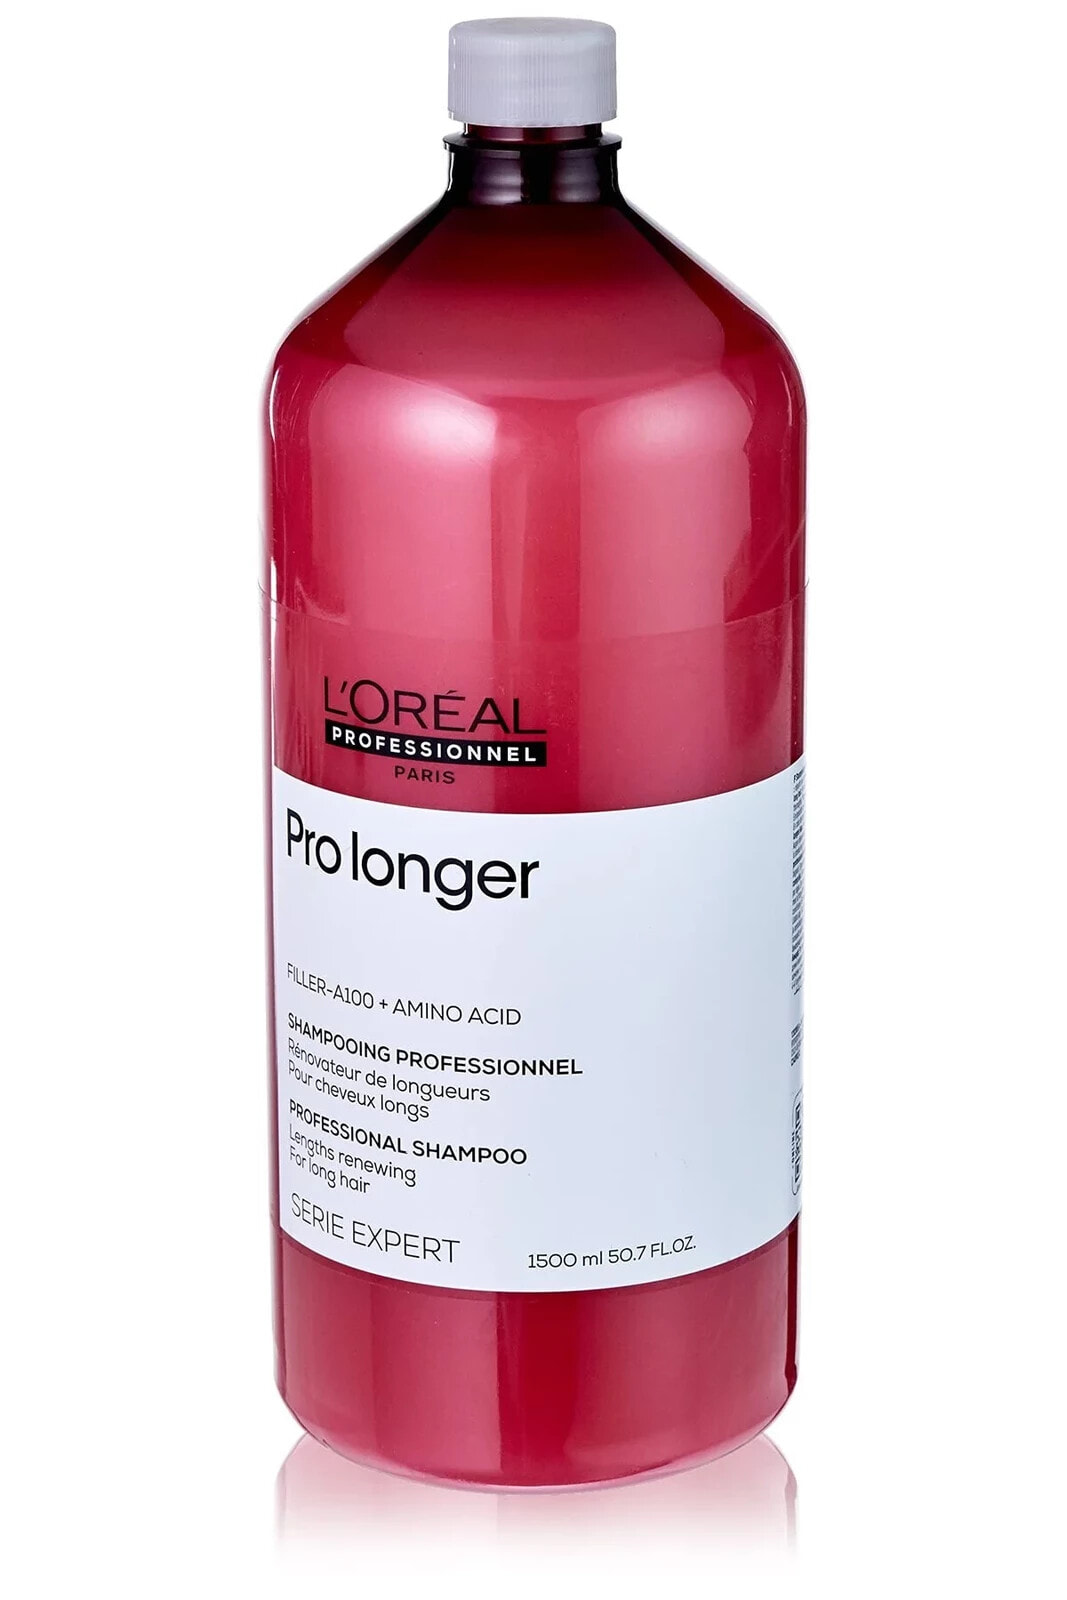 L'oreal Paris Loreal Serie Expert Pro Longer Saç Uçlarını Dolgunlaştırıcı Şampuan 1500 mlSED46961313